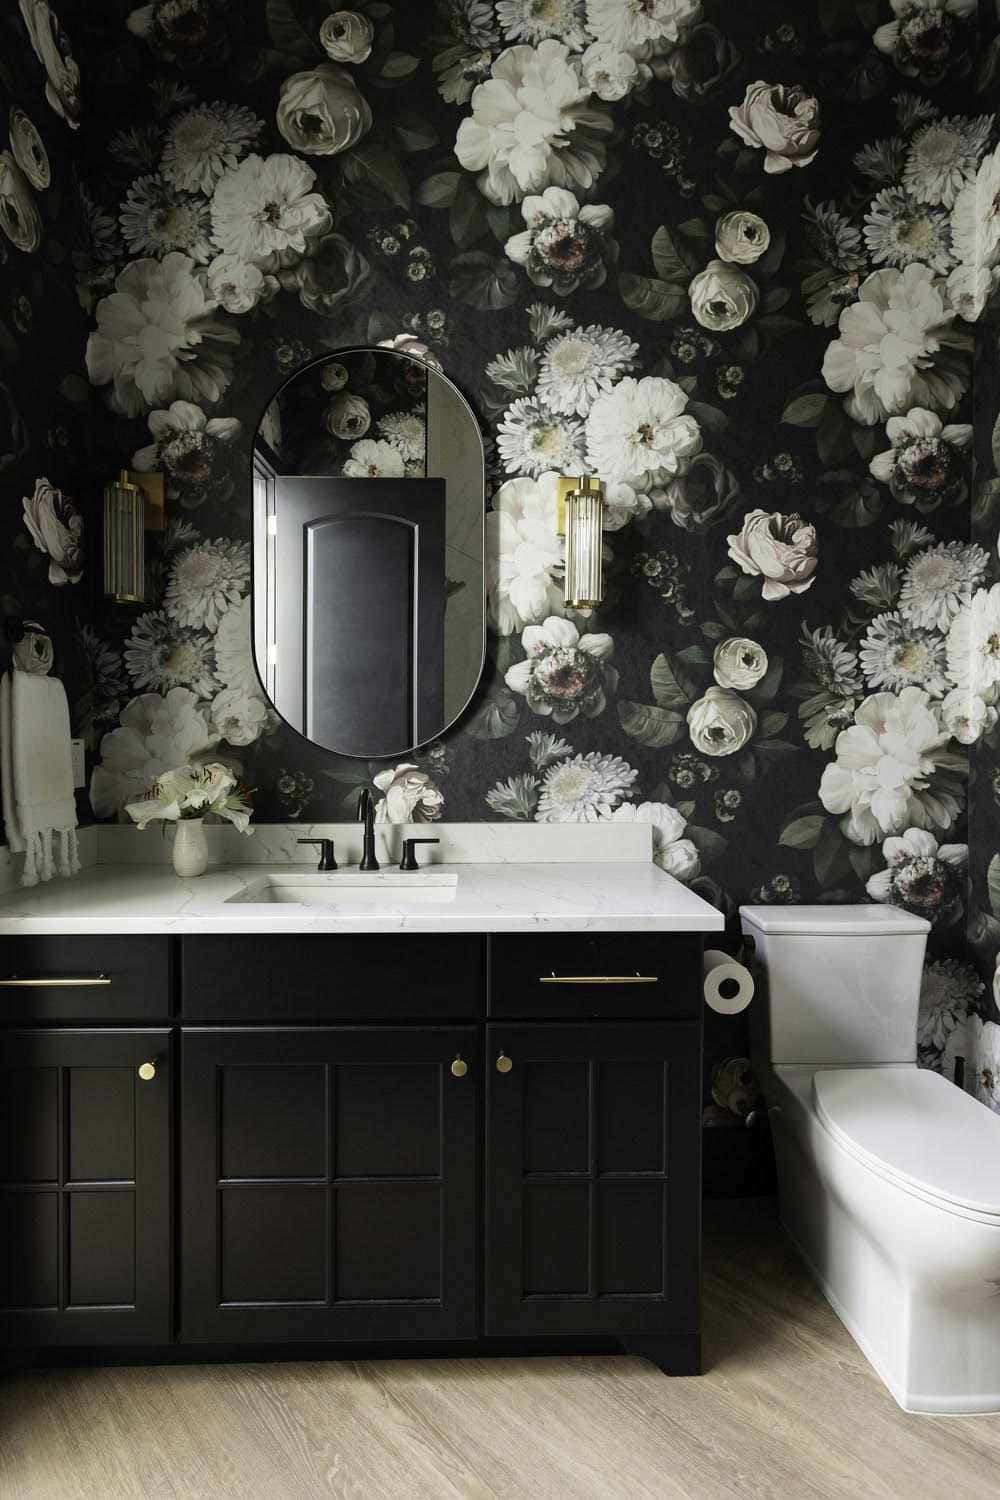 Elegant Floral Bathroom Decor Wallpaper